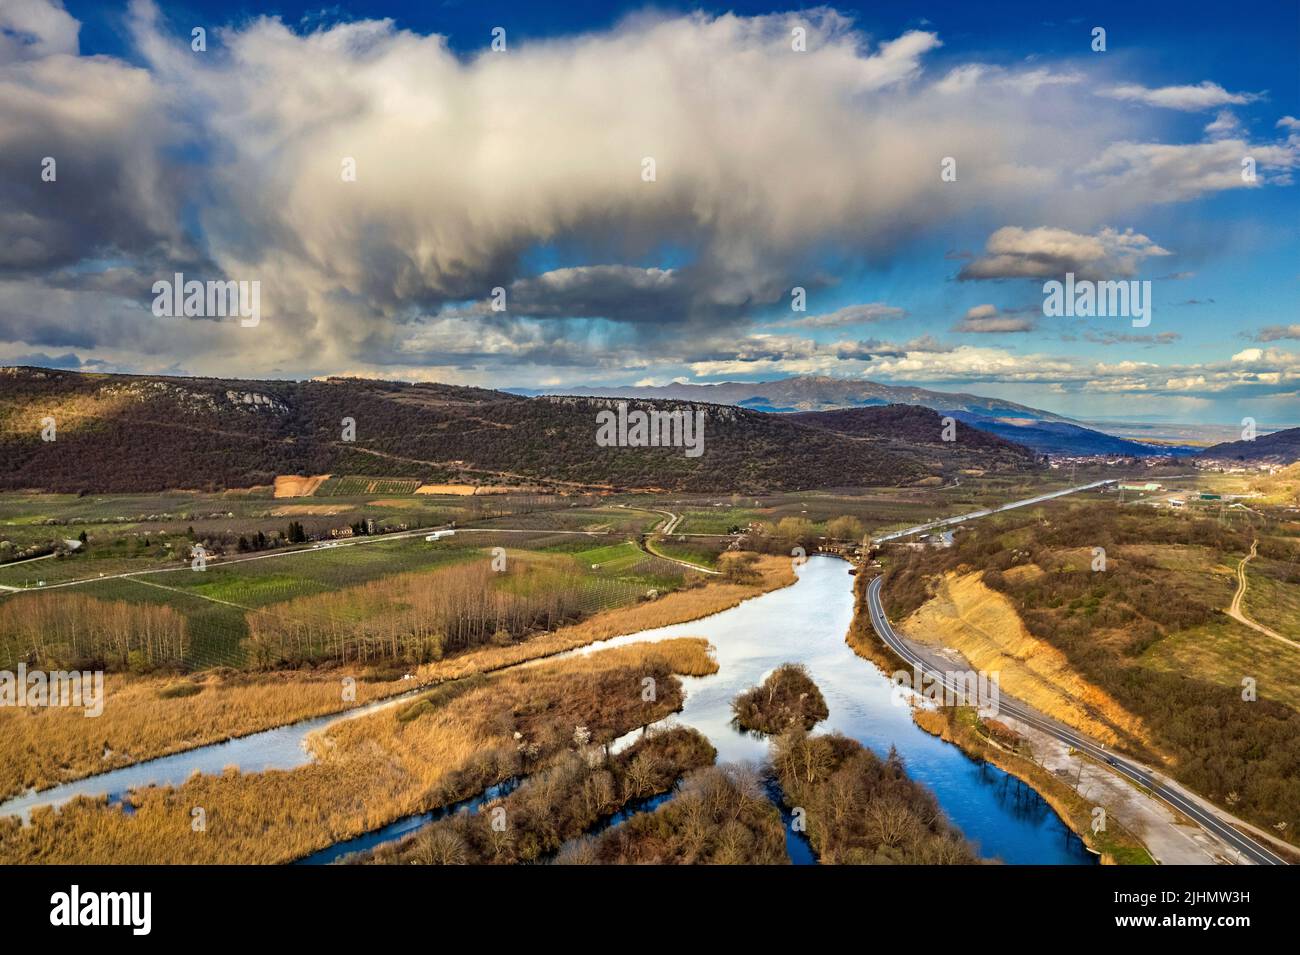 Am Feuchtgebiet des Agra-Vrytta-Nissi-Sees, Pella, Mazedonien, Griechenland. Sie können auch die Straße Edessa-Florina sehen. Stockfoto